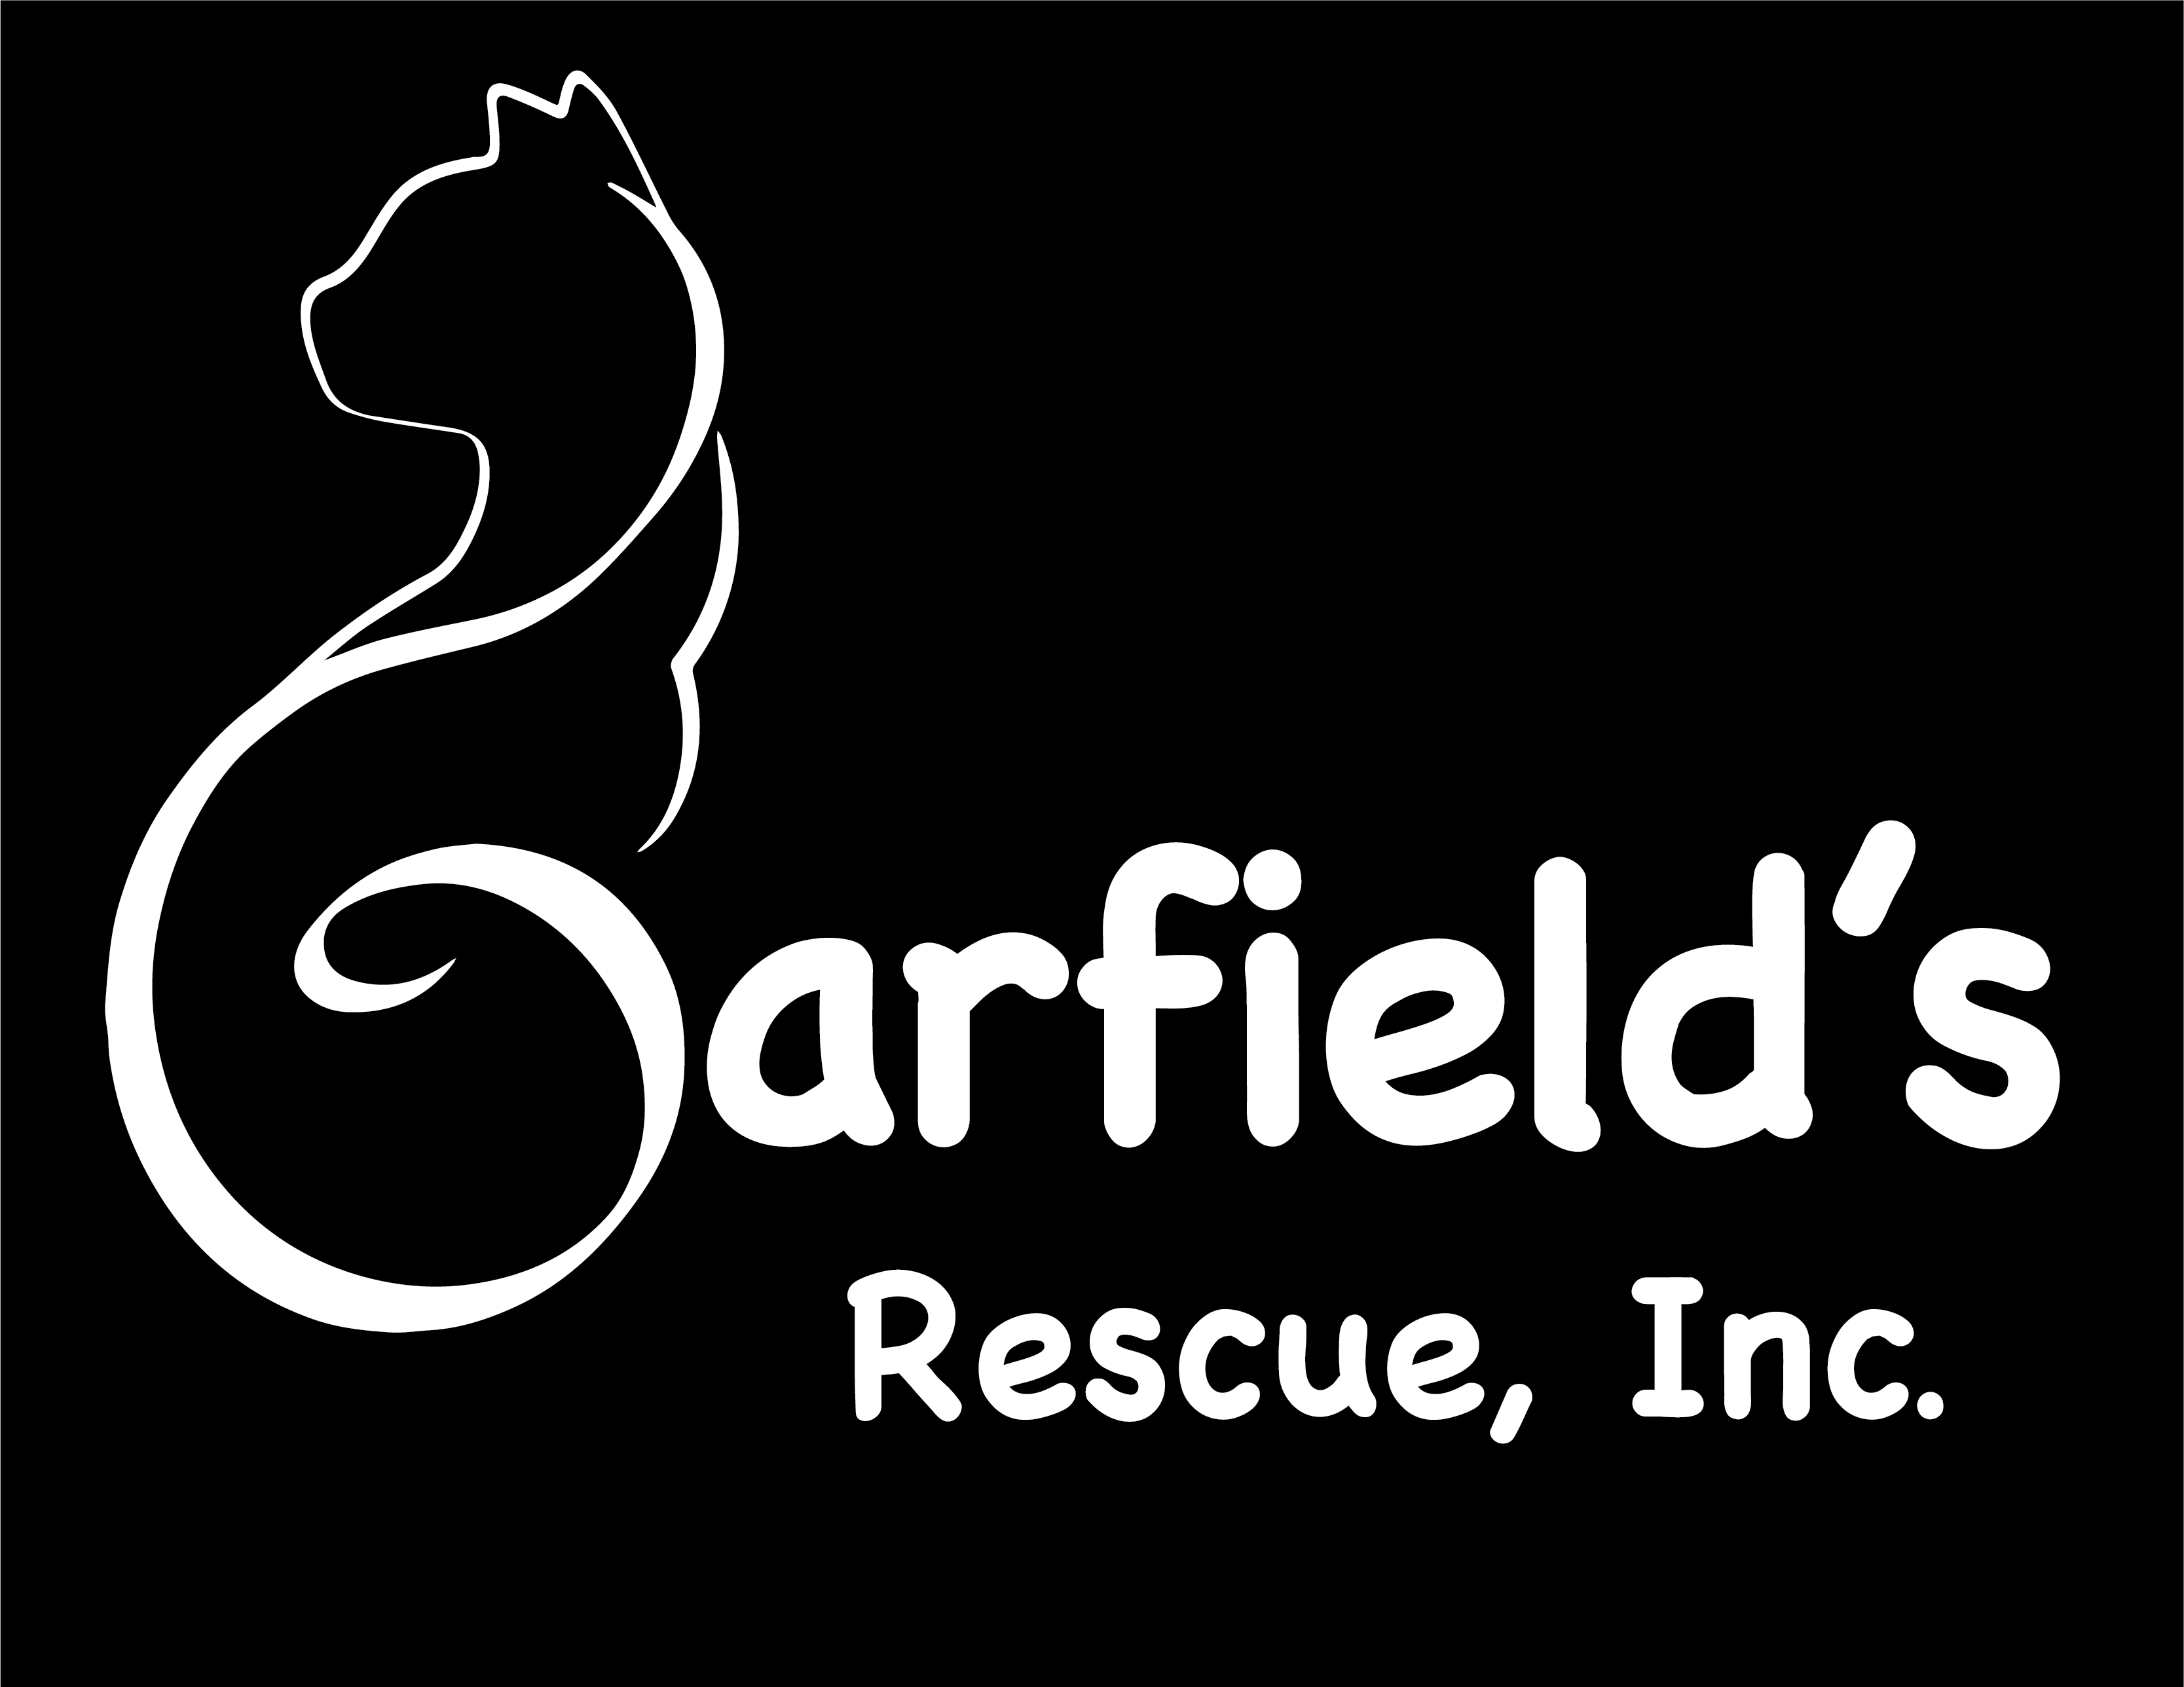 Garfield's Rescue, Inc